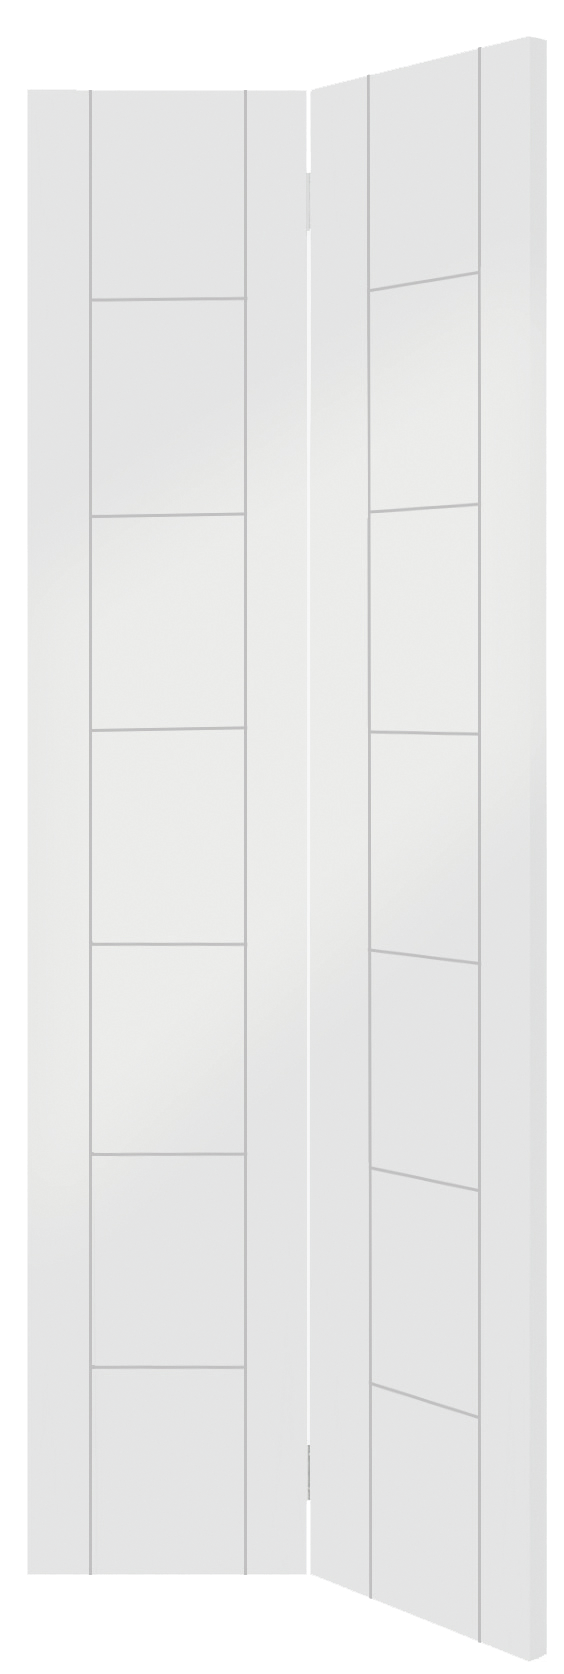 Palermo Internal White Primed Bi-Fold Door – White Primed, 1981 x 762 x 35 mm